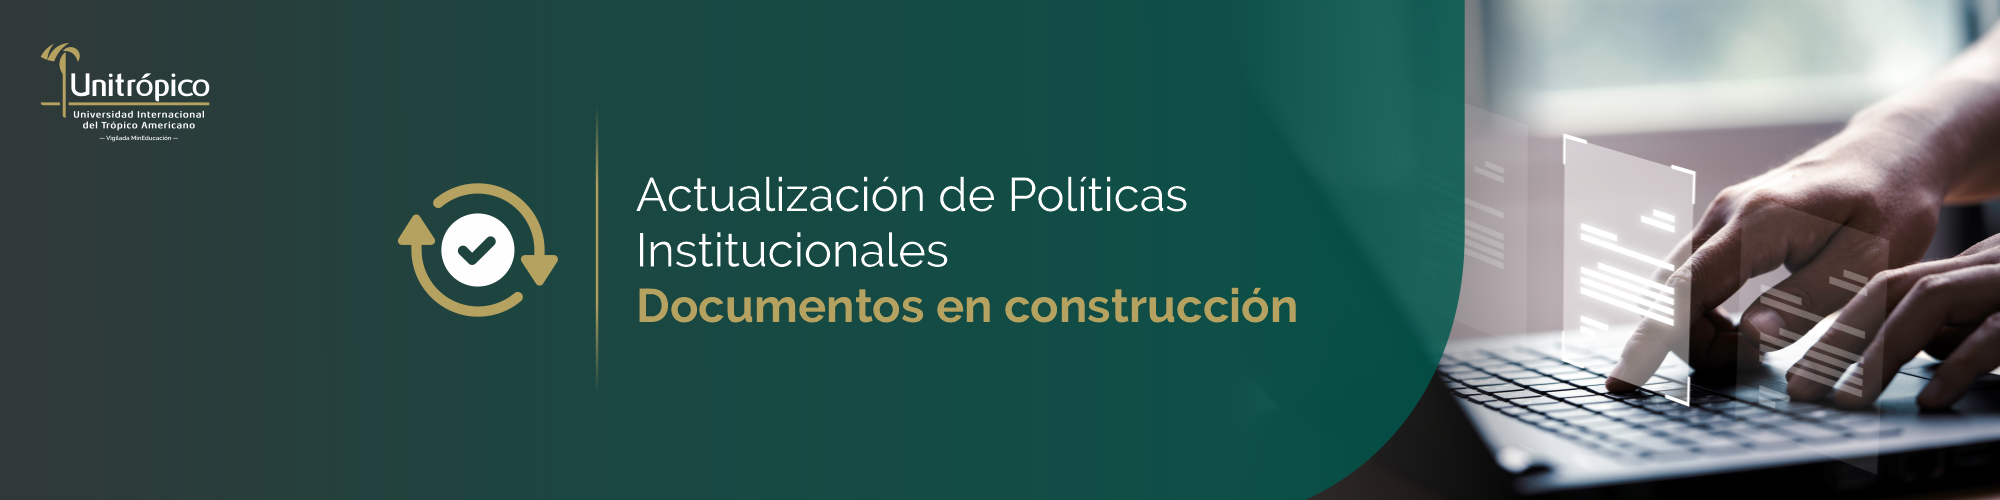 Actualizacion_de_Politicas_BANNER.png